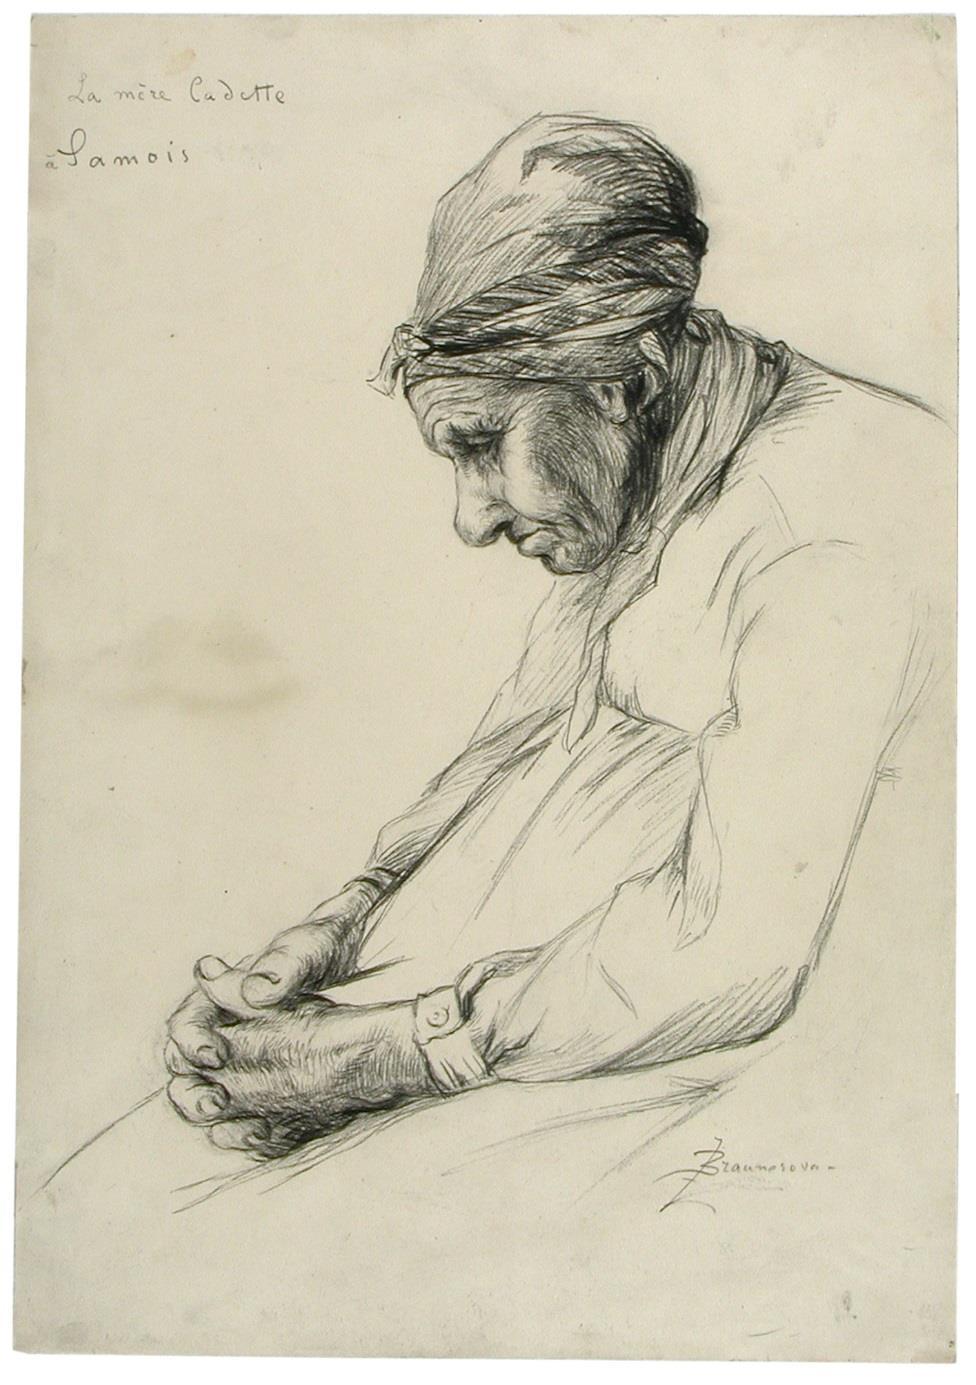 La mère Cadette, 1887, crayon sur papier.